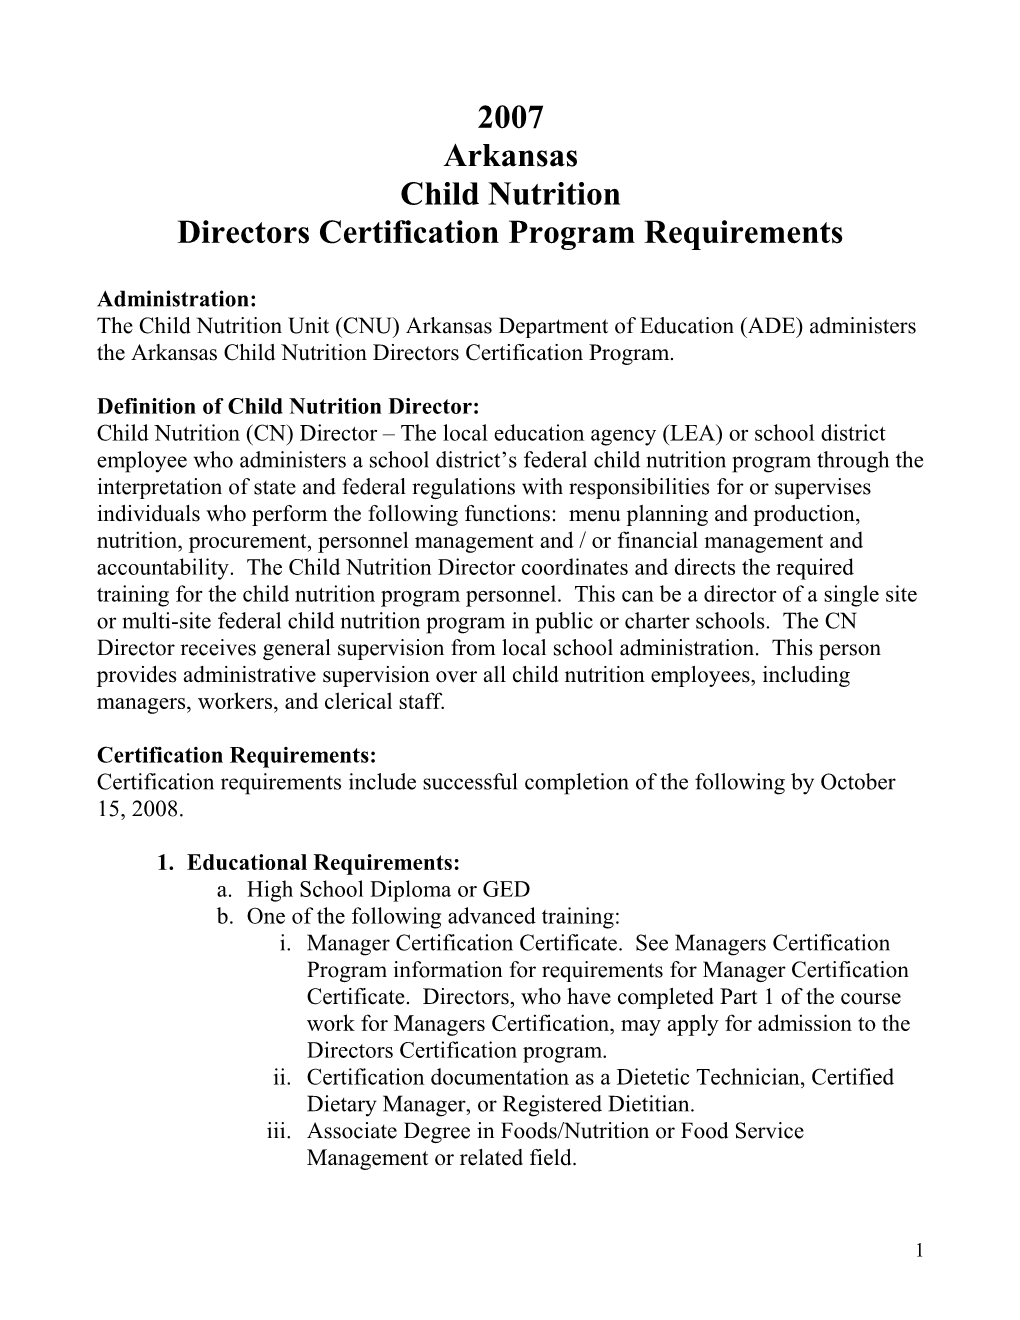 Directors Certification Program Requirements